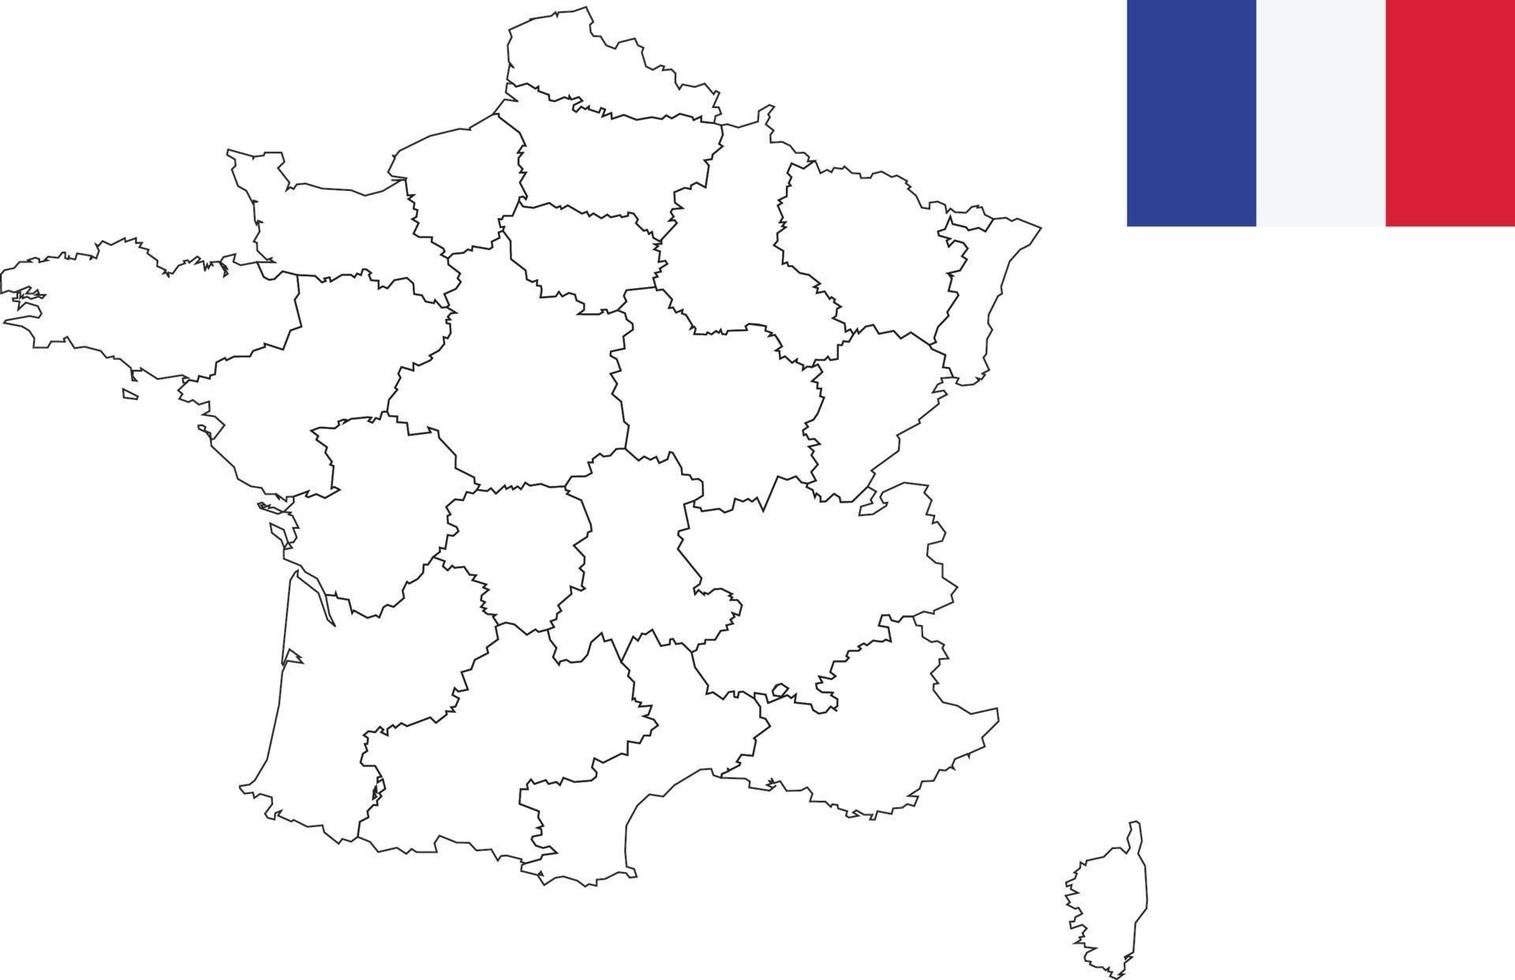 Karte und Flagge von Frankreich vektor